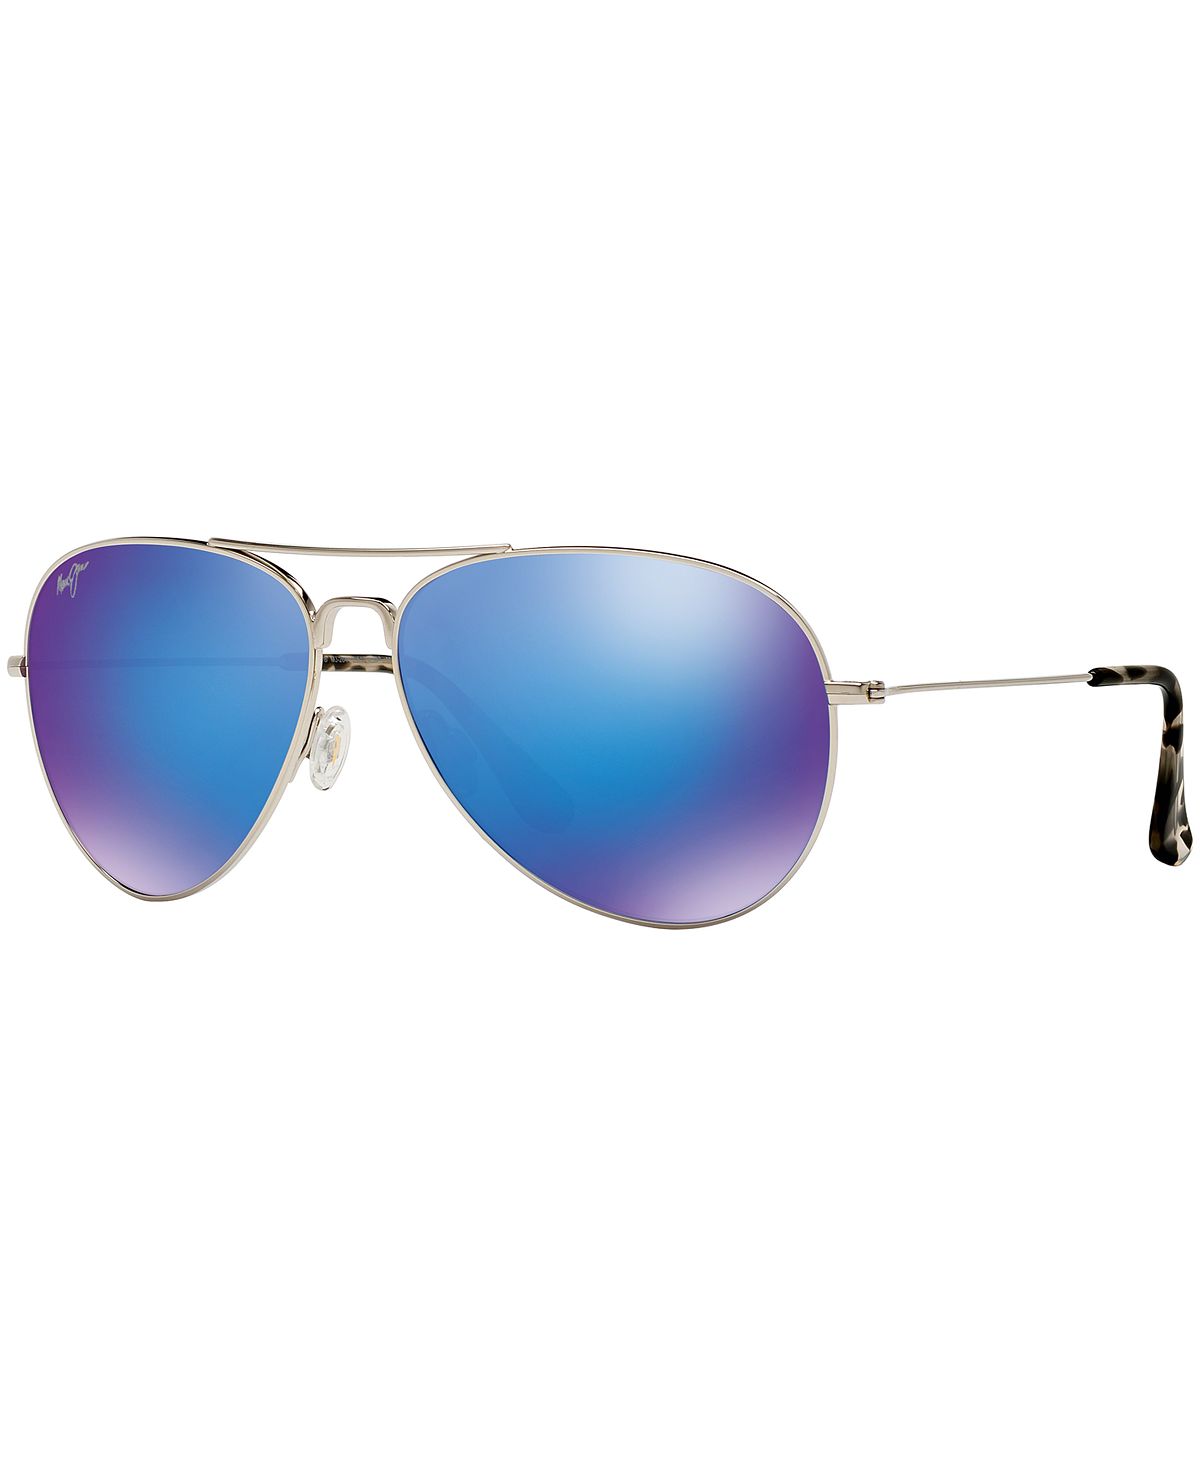 Поляризованные солнцезащитные очки Mavericks, 264 г. Maui Jim